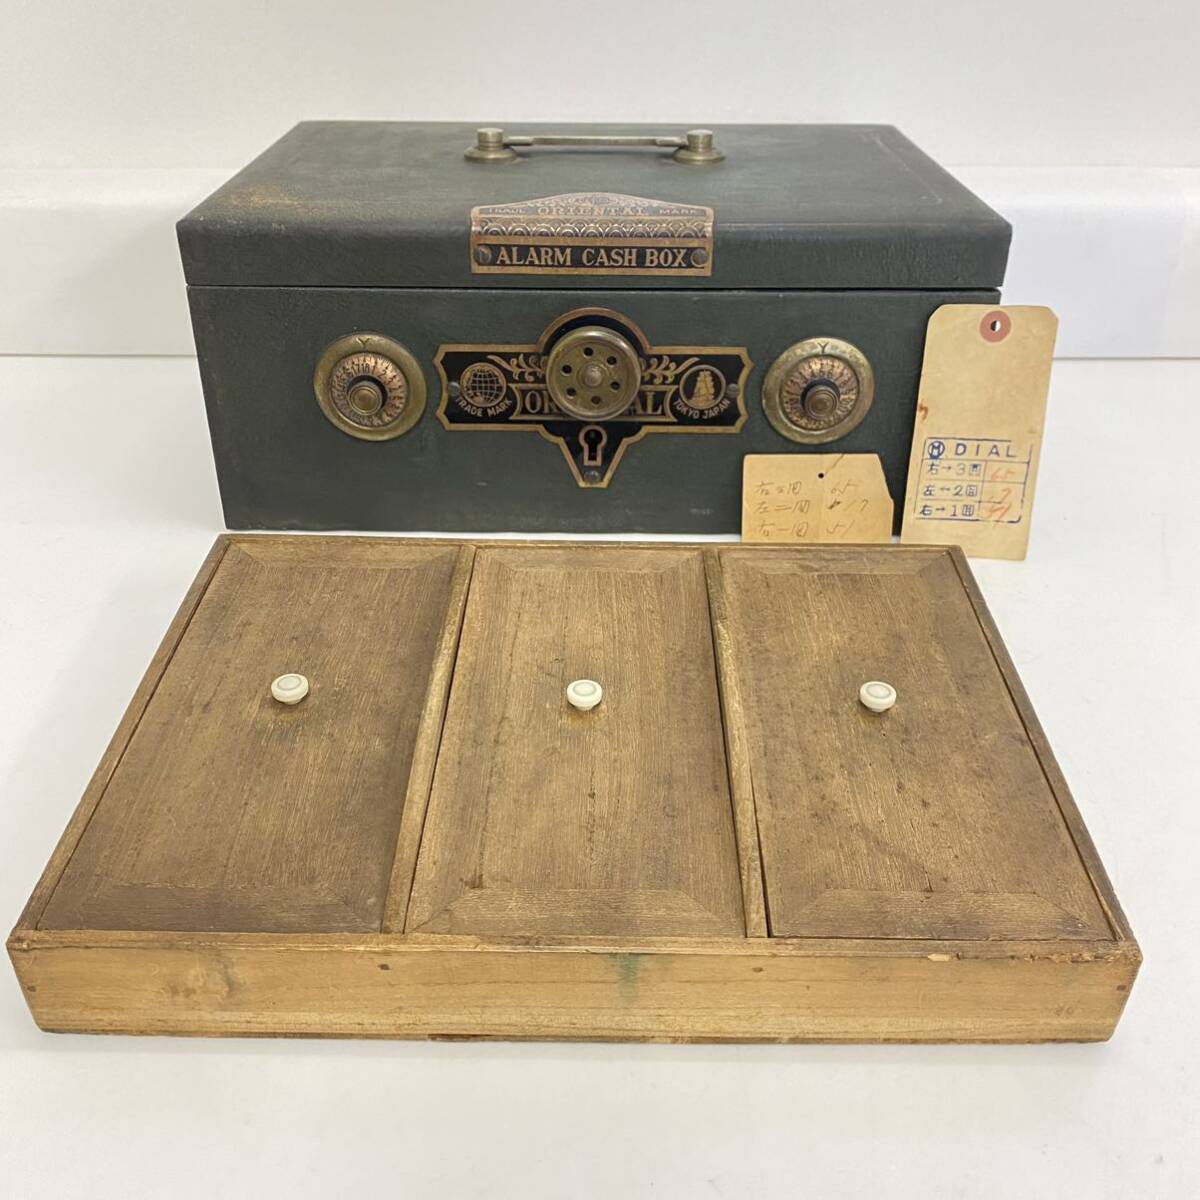 906 Vintage retro сумка-сейф dial тип ORIENTAL ALARM CASH BOX дерево с коробкой подлинная вещь коллекция TRADE MARK TOKYO JAPAN зеленый 